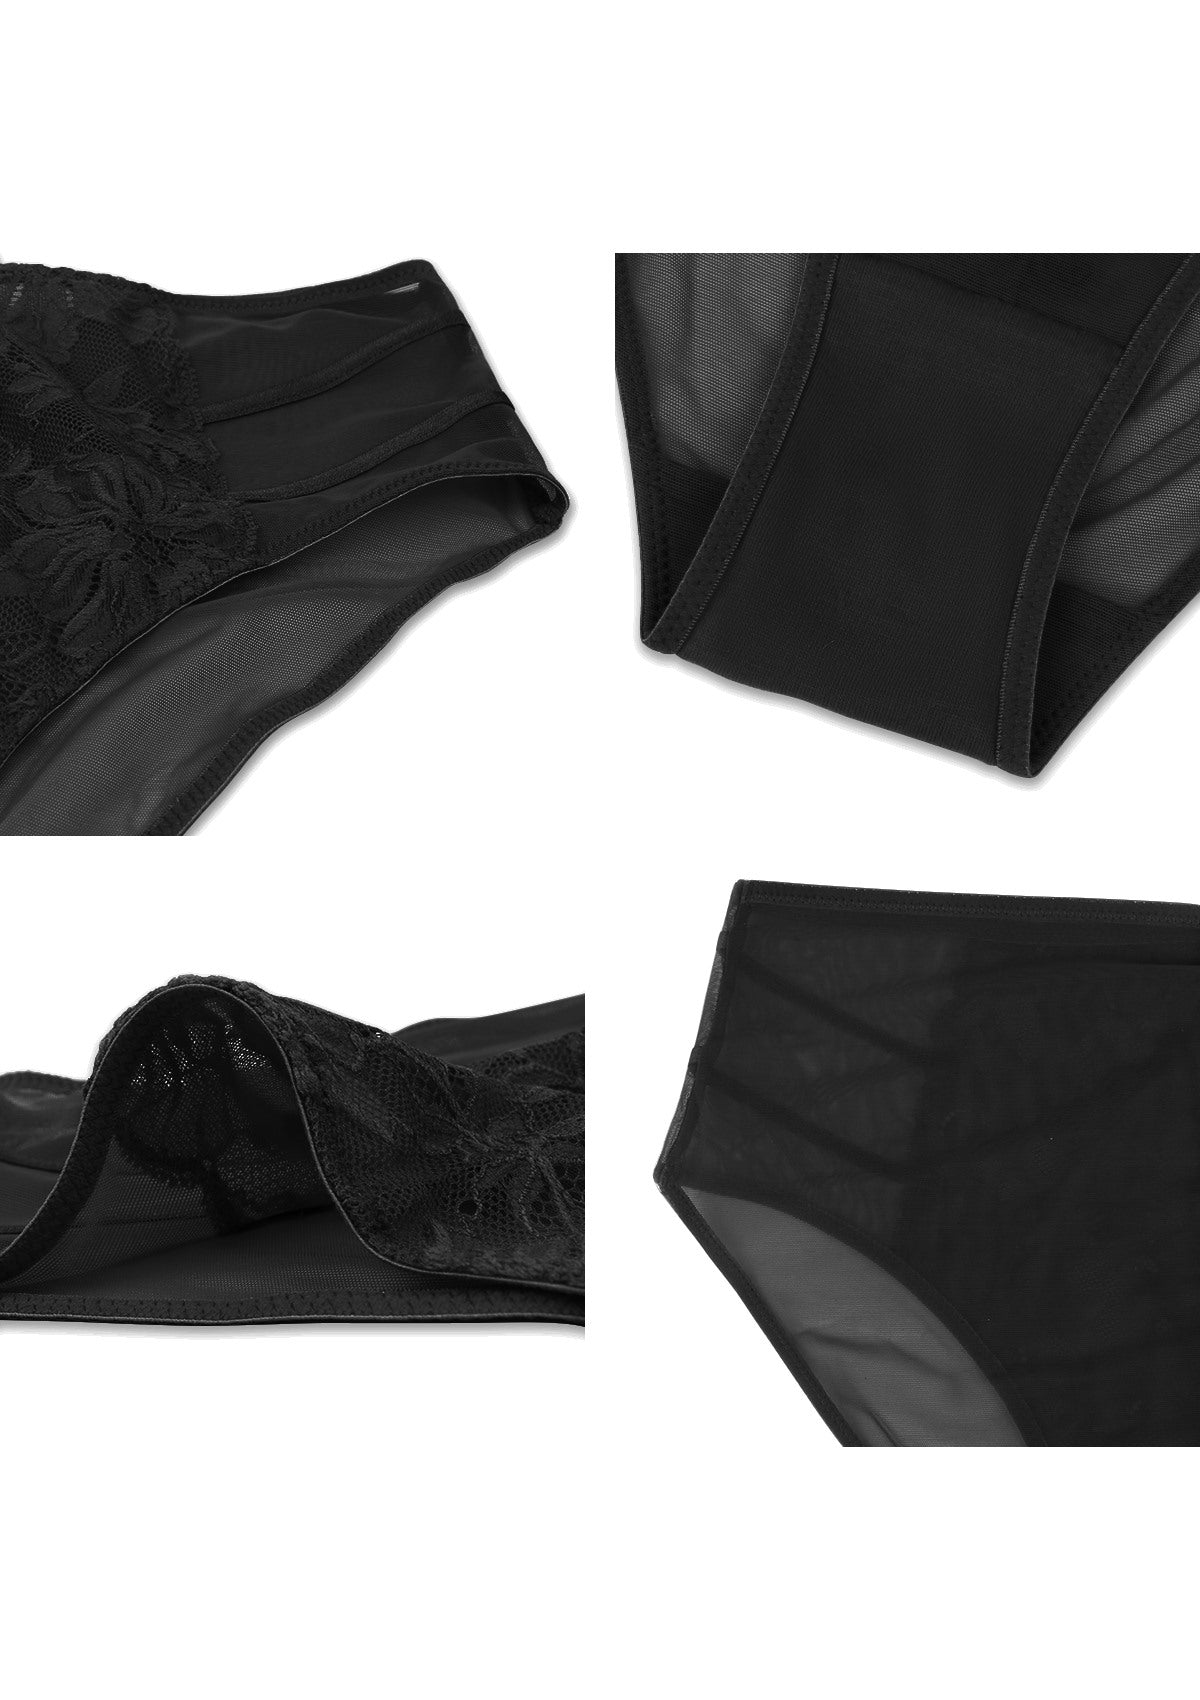 HSIA Pretty In Petals Sexy Lightweight Breathable Lace Underwear  - M / Bikini / Black